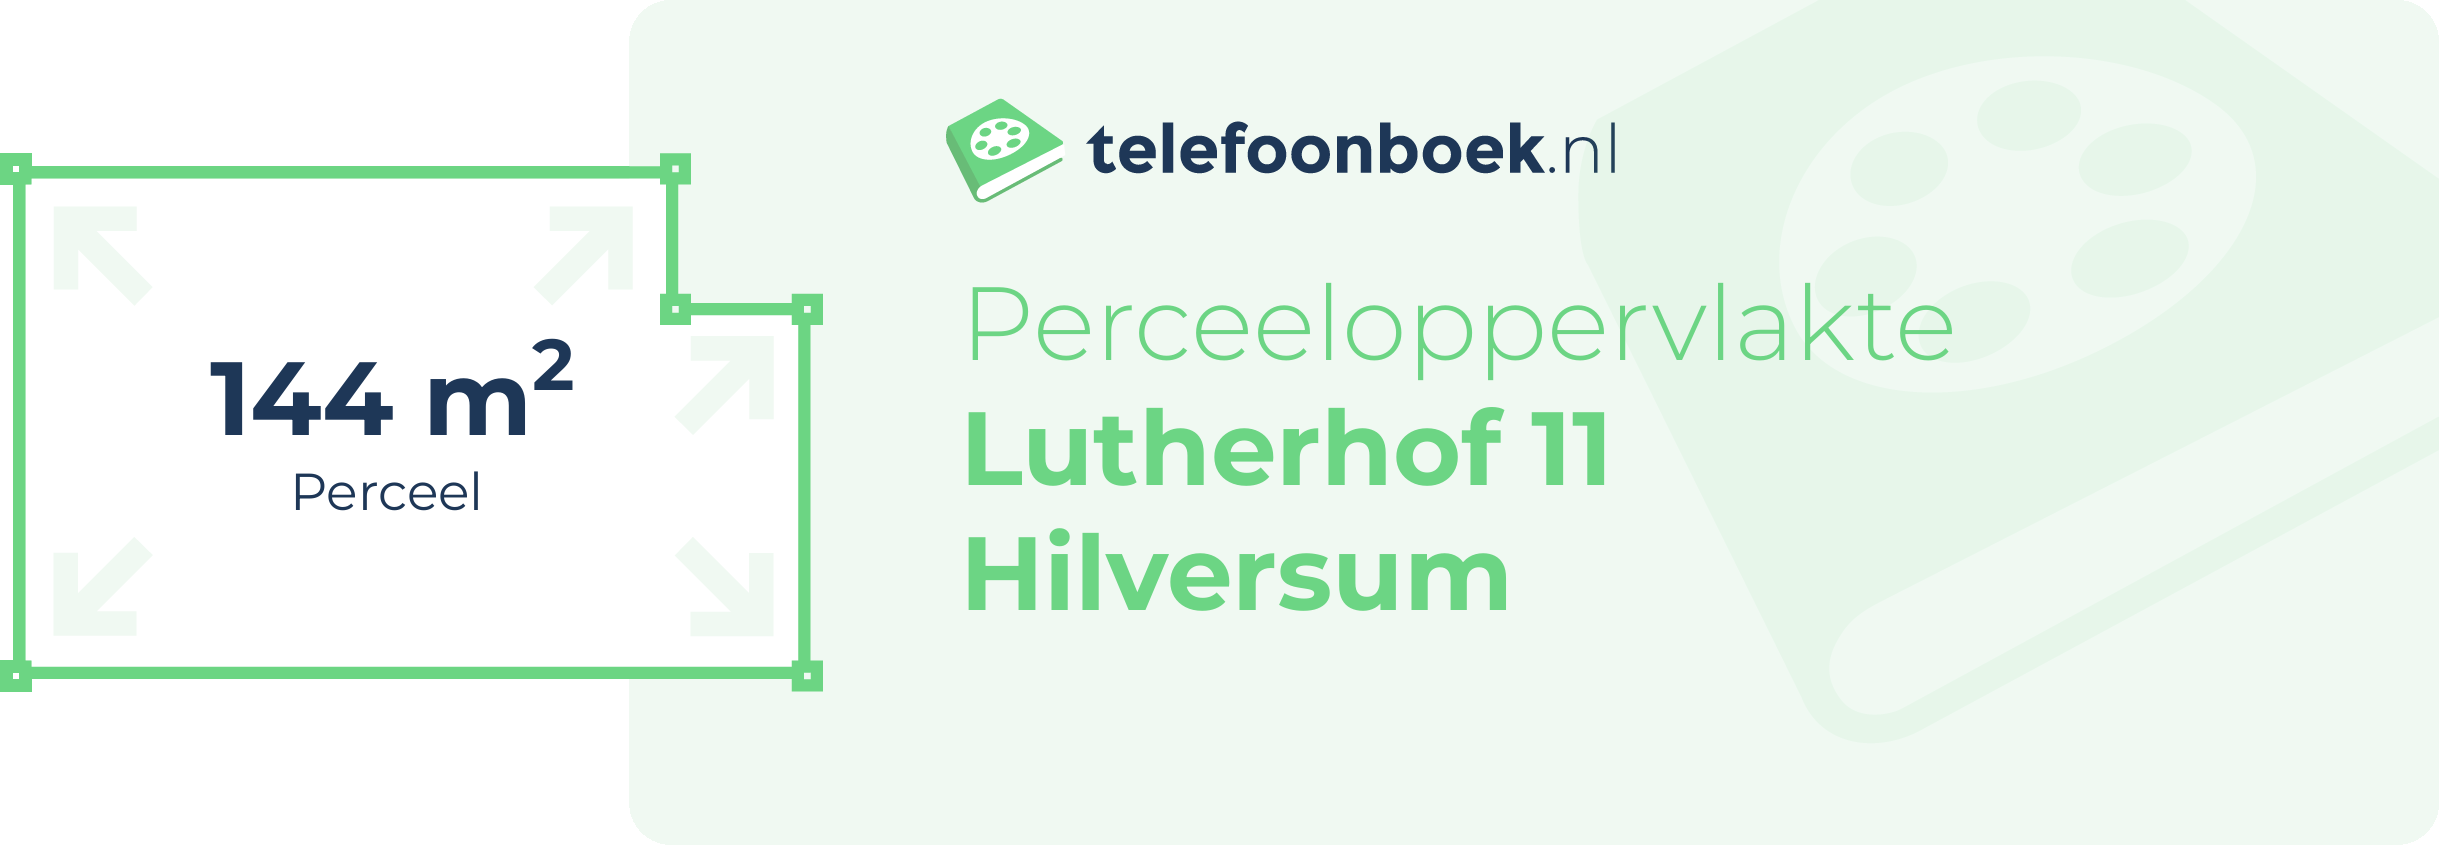 Perceeloppervlakte Lutherhof 11 Hilversum